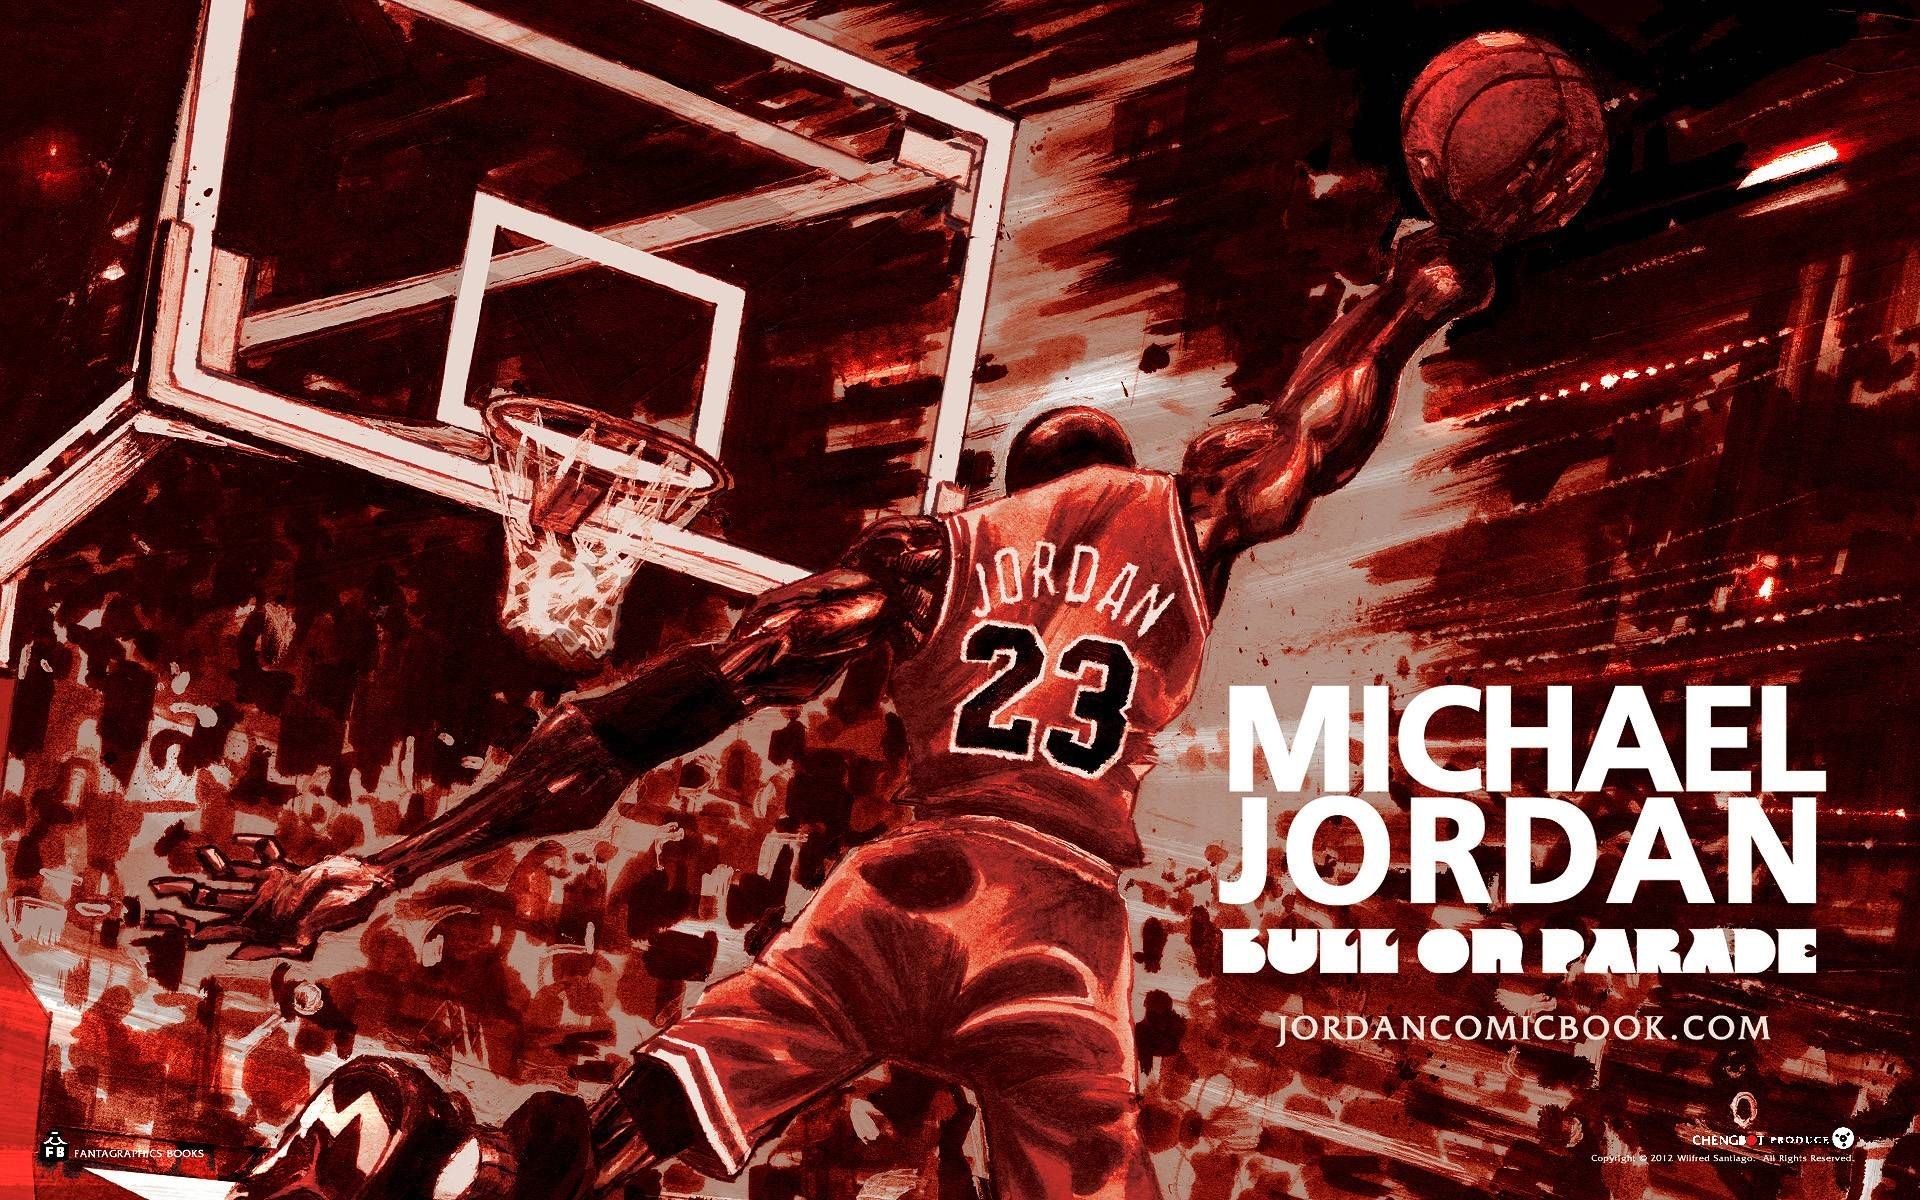 1920x1200 Michael Jordan Iphone Wallpapers TELGRAPHIC swag 1920Ã1200 Wallpapers  Michael Jordan (44 Wallpapers) | Adorable Wallpapers